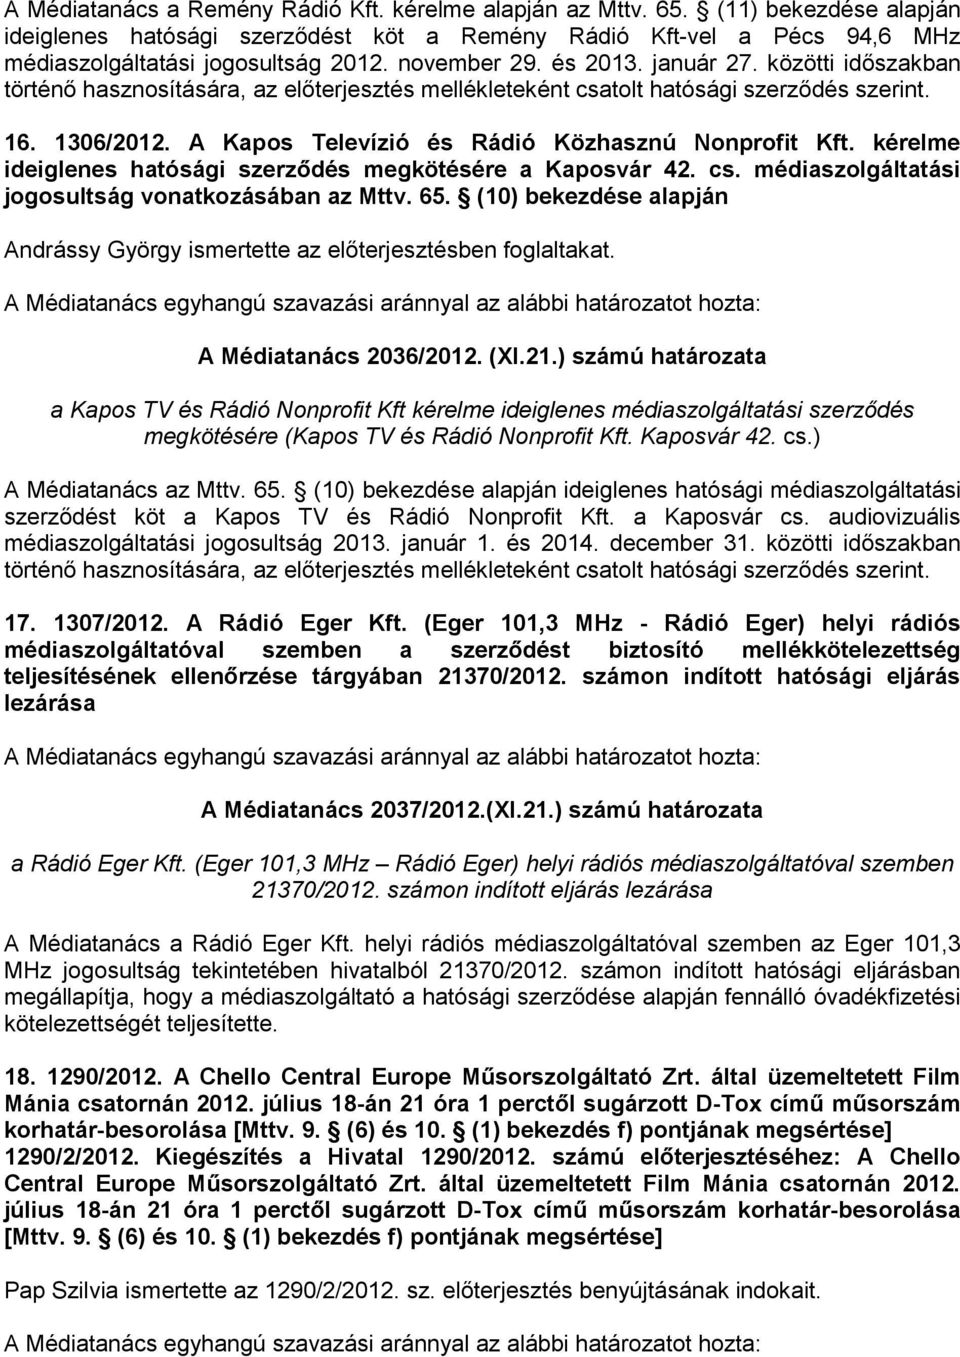 A Kapos Televízió és Rádió Közhasznú Nonprofit Kft. kérelme ideiglenes hatósági szerződés megkötésére a Kaposvár 42. cs. médiaszolgáltatási jogosultság vonatkozásában az Mttv. 65.